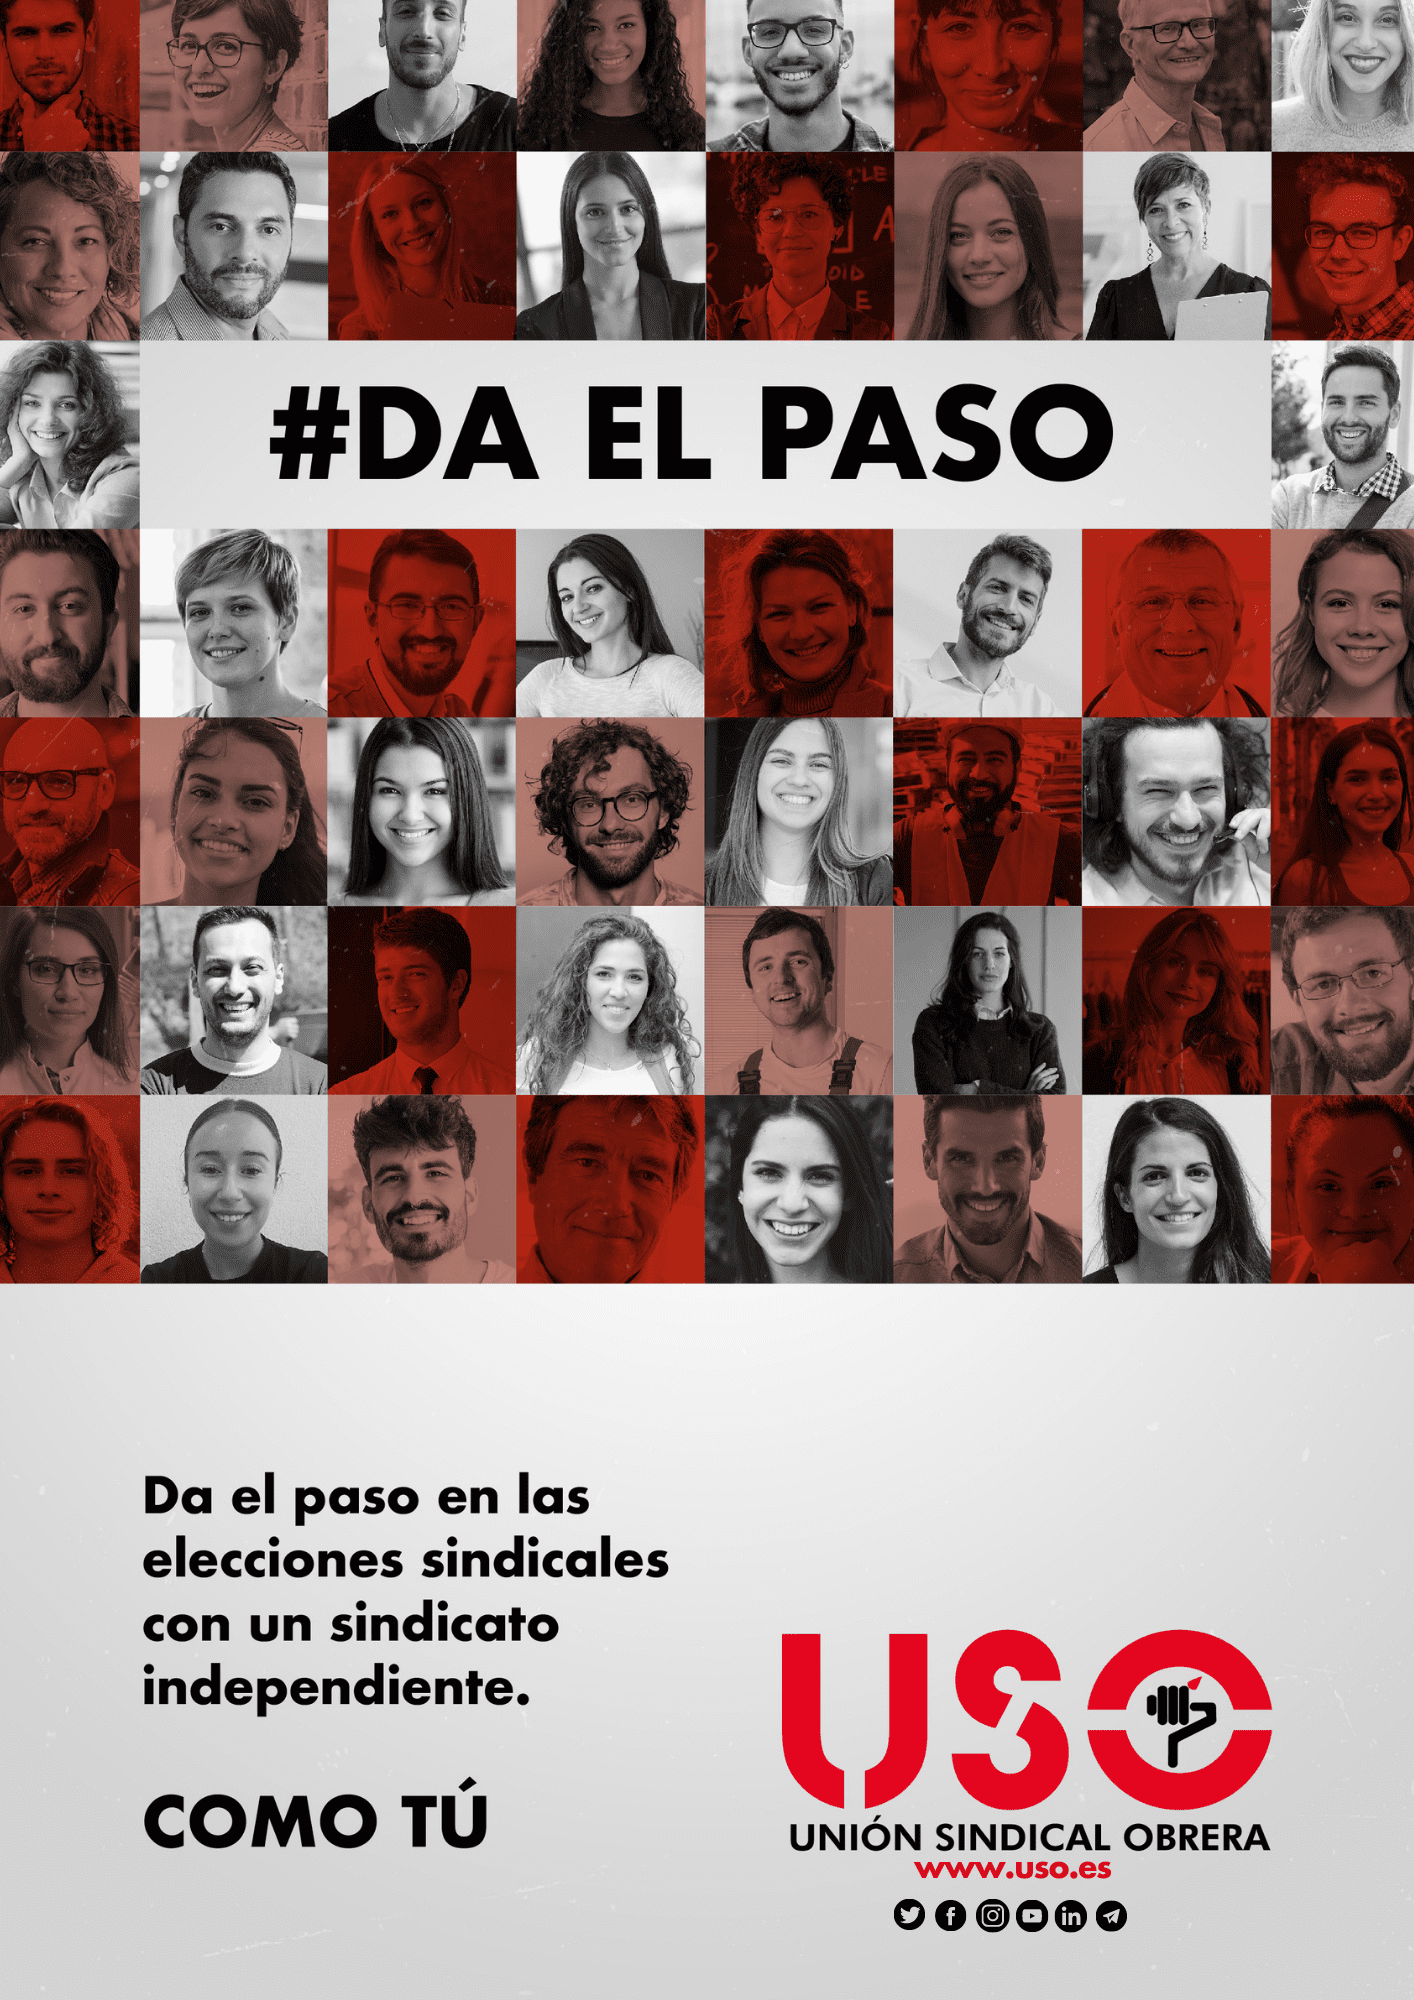 #DaElPaso con USO. Un sindicato independiente, como tú